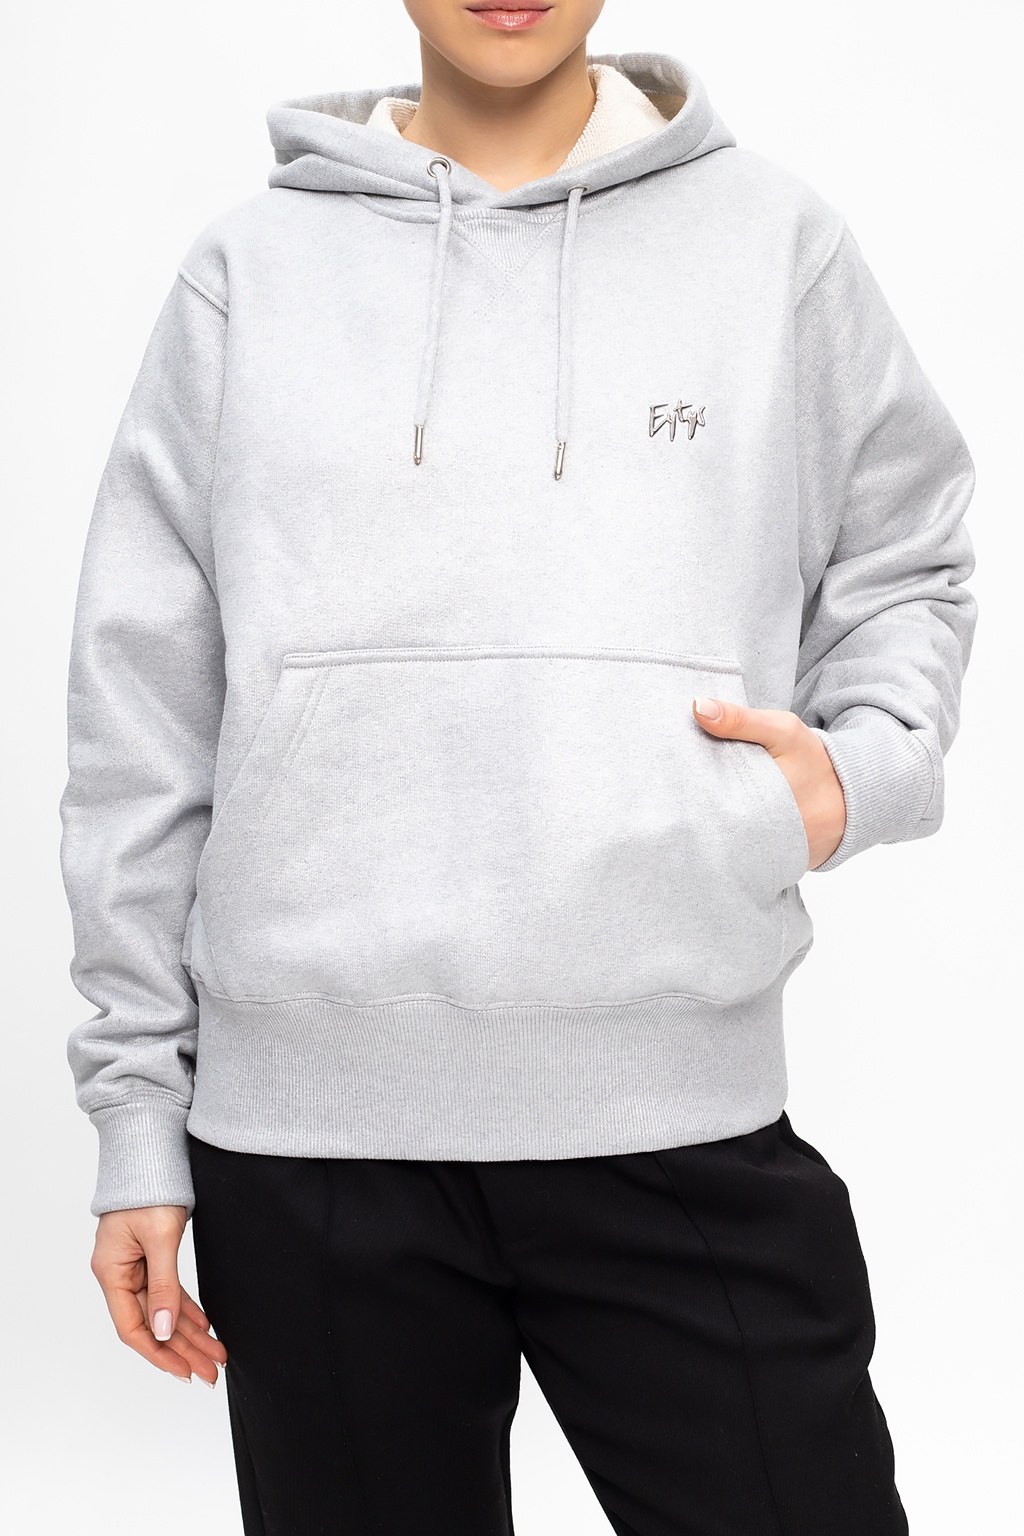 Eytys Branded hoodie | Women's Clothing |